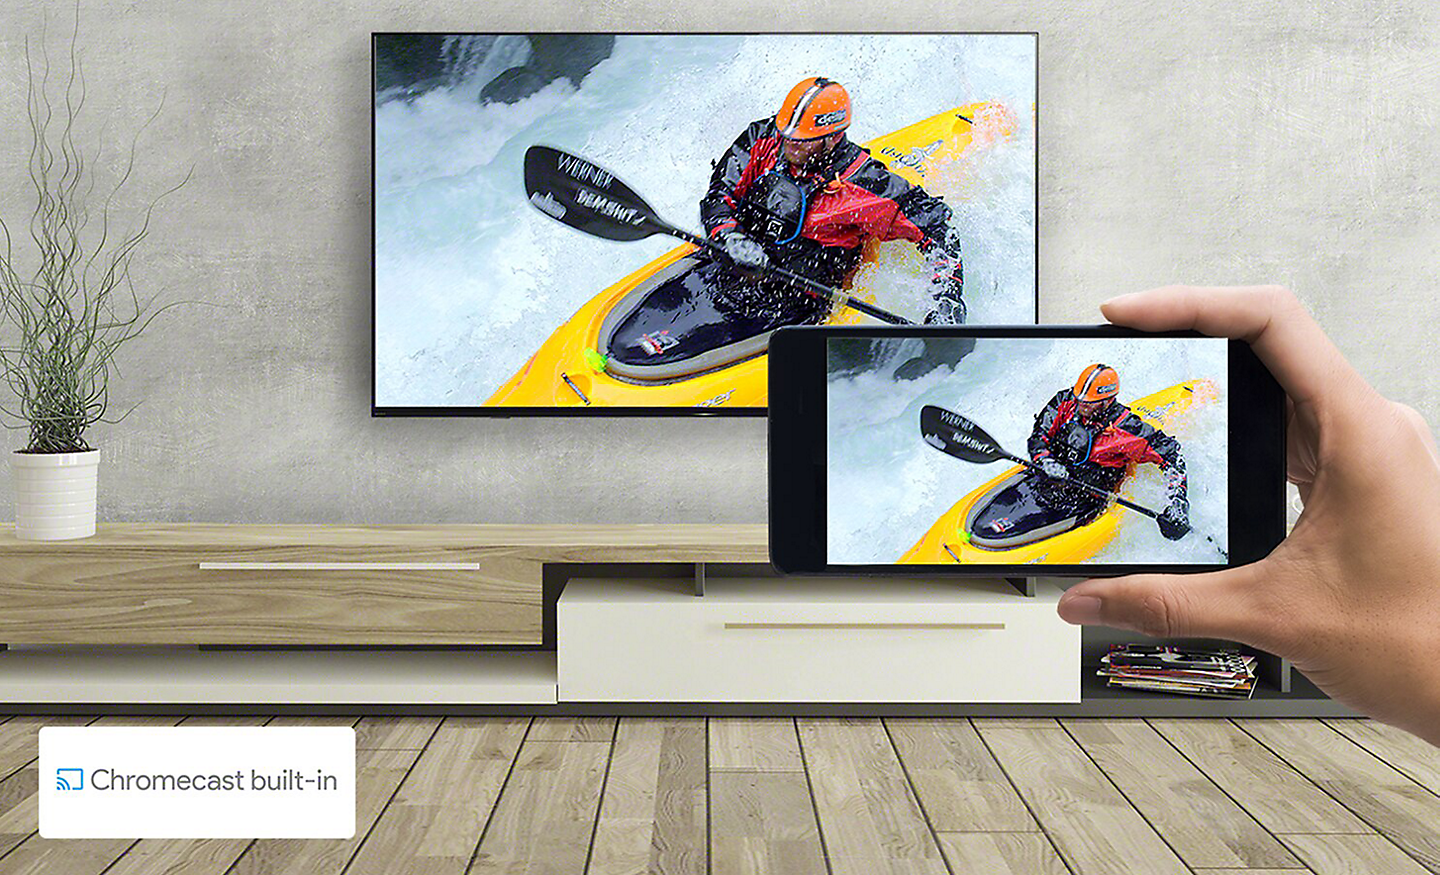 Ръка държи смартфон пред монтиран на стената телевизор – и двата екрана показват едно и също изображение на плаване с каяк. Лого на вграден Chromecast долу вляво.